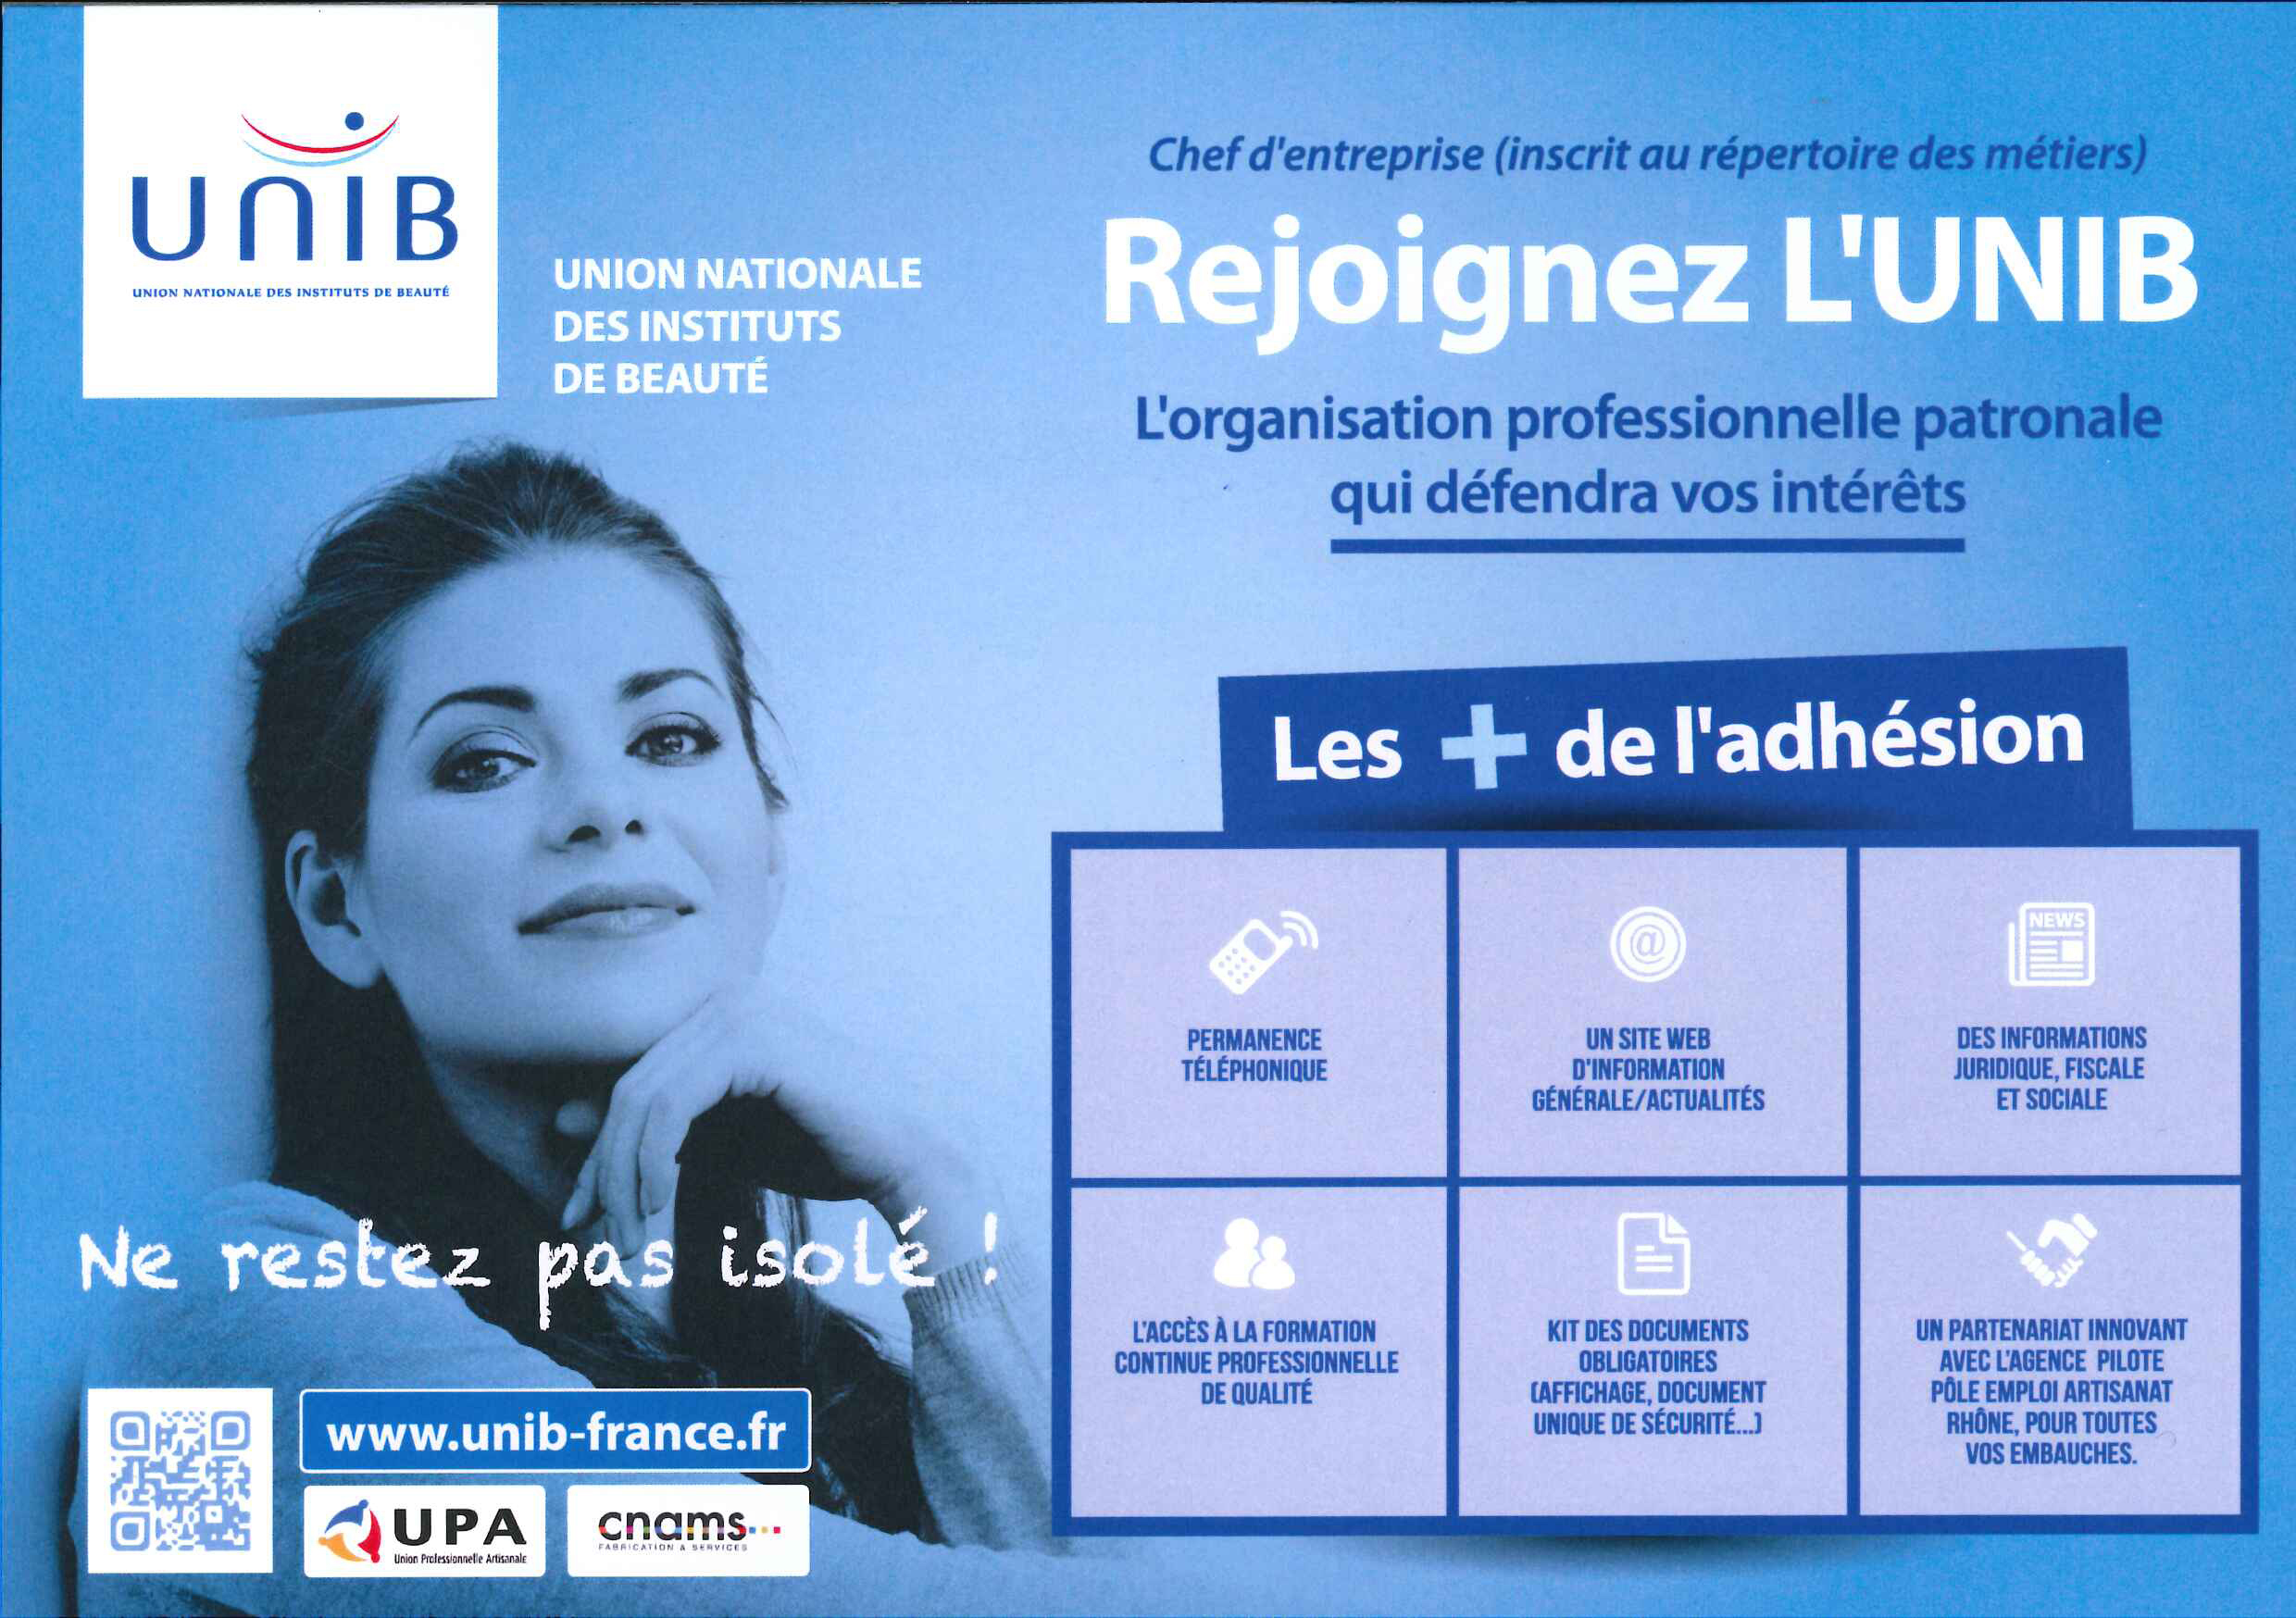 UNIB : Union Nationale des Instituts de Beauté